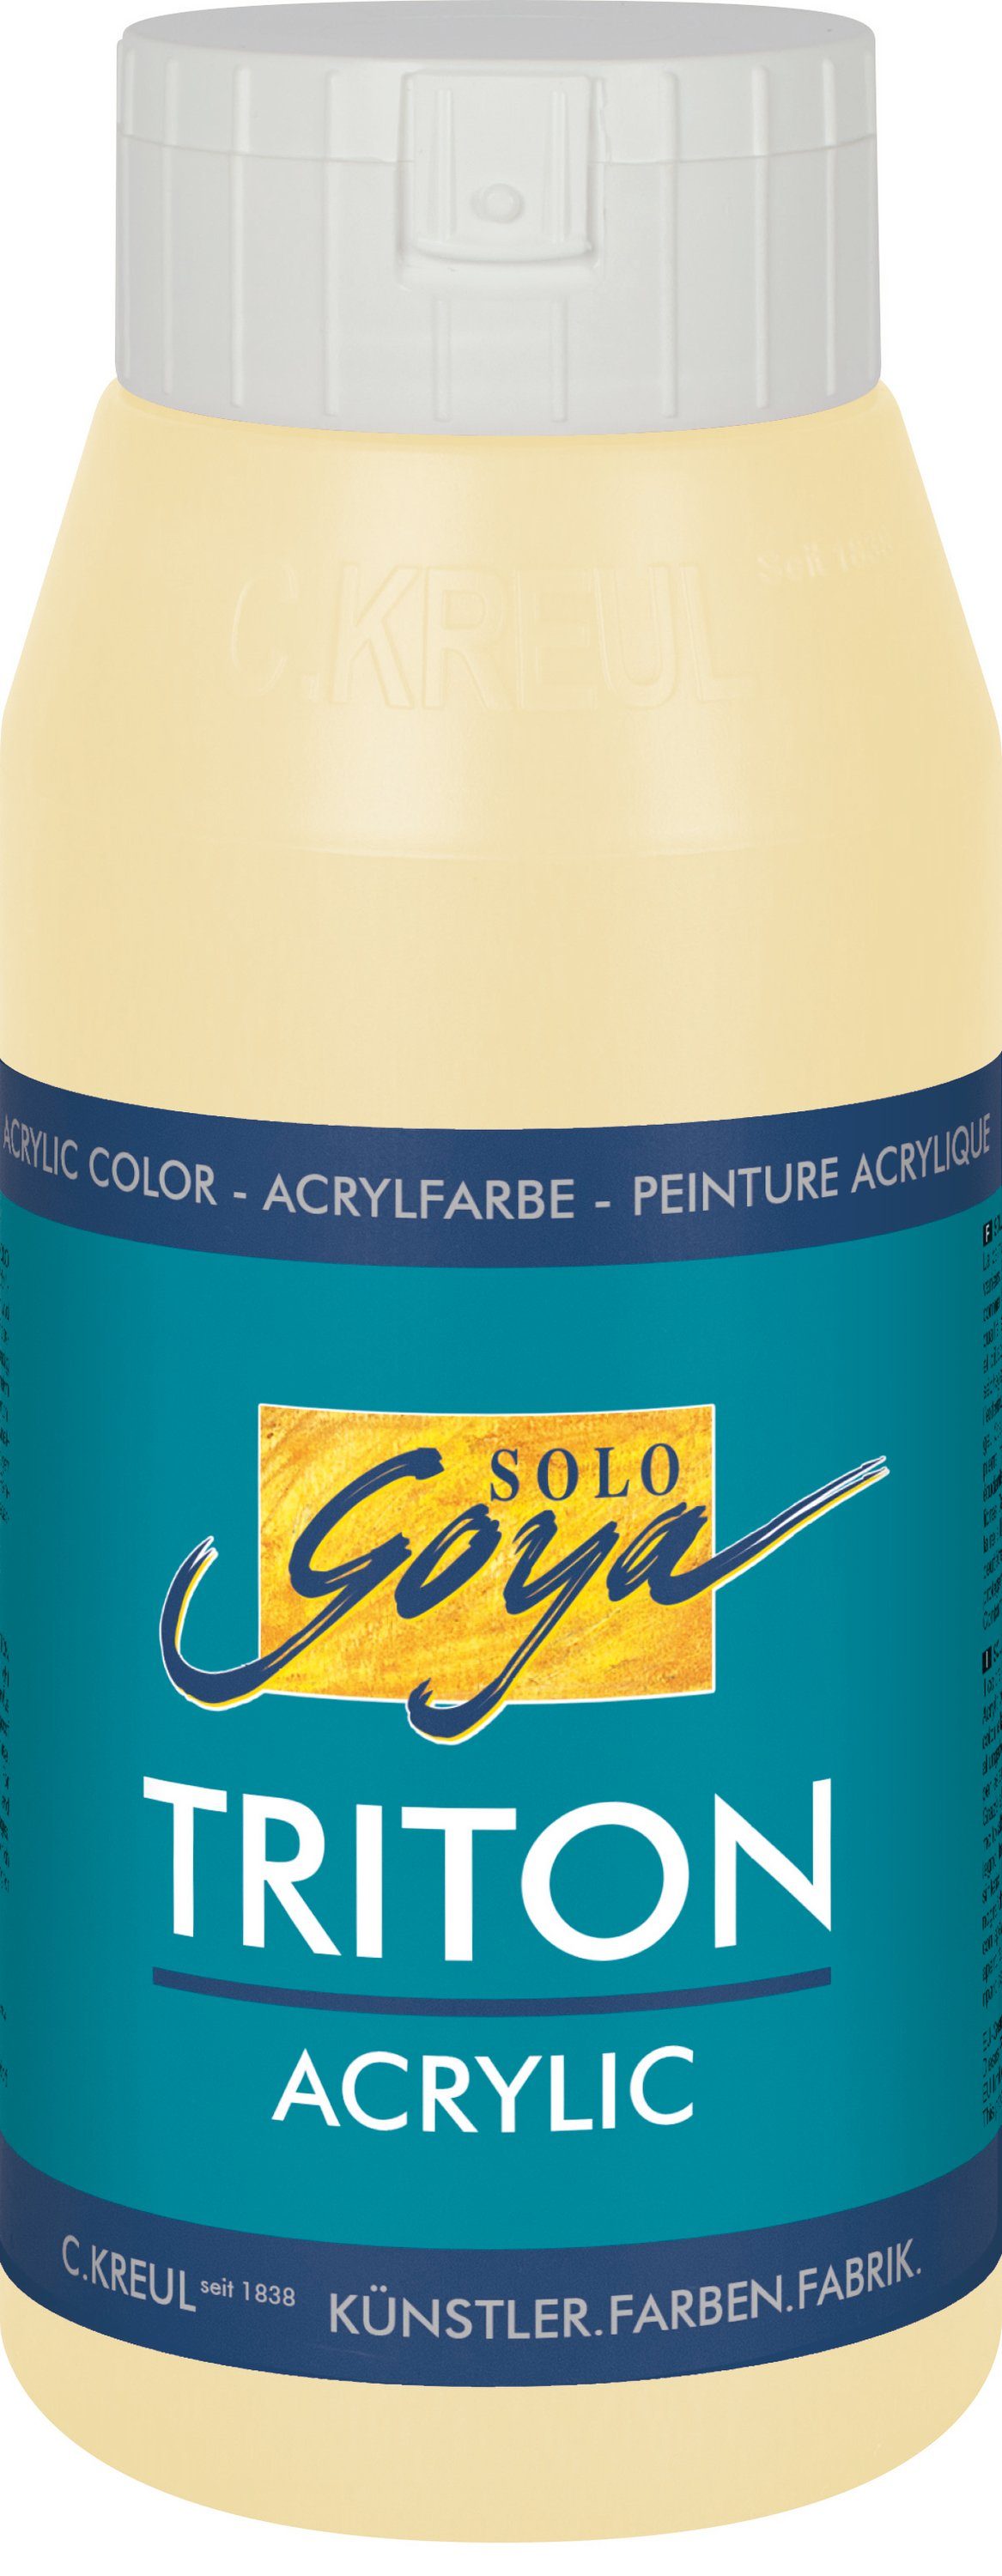 Kreul Acrylfarbe Solo Goya Triton Acrylic, 750 ml Beige